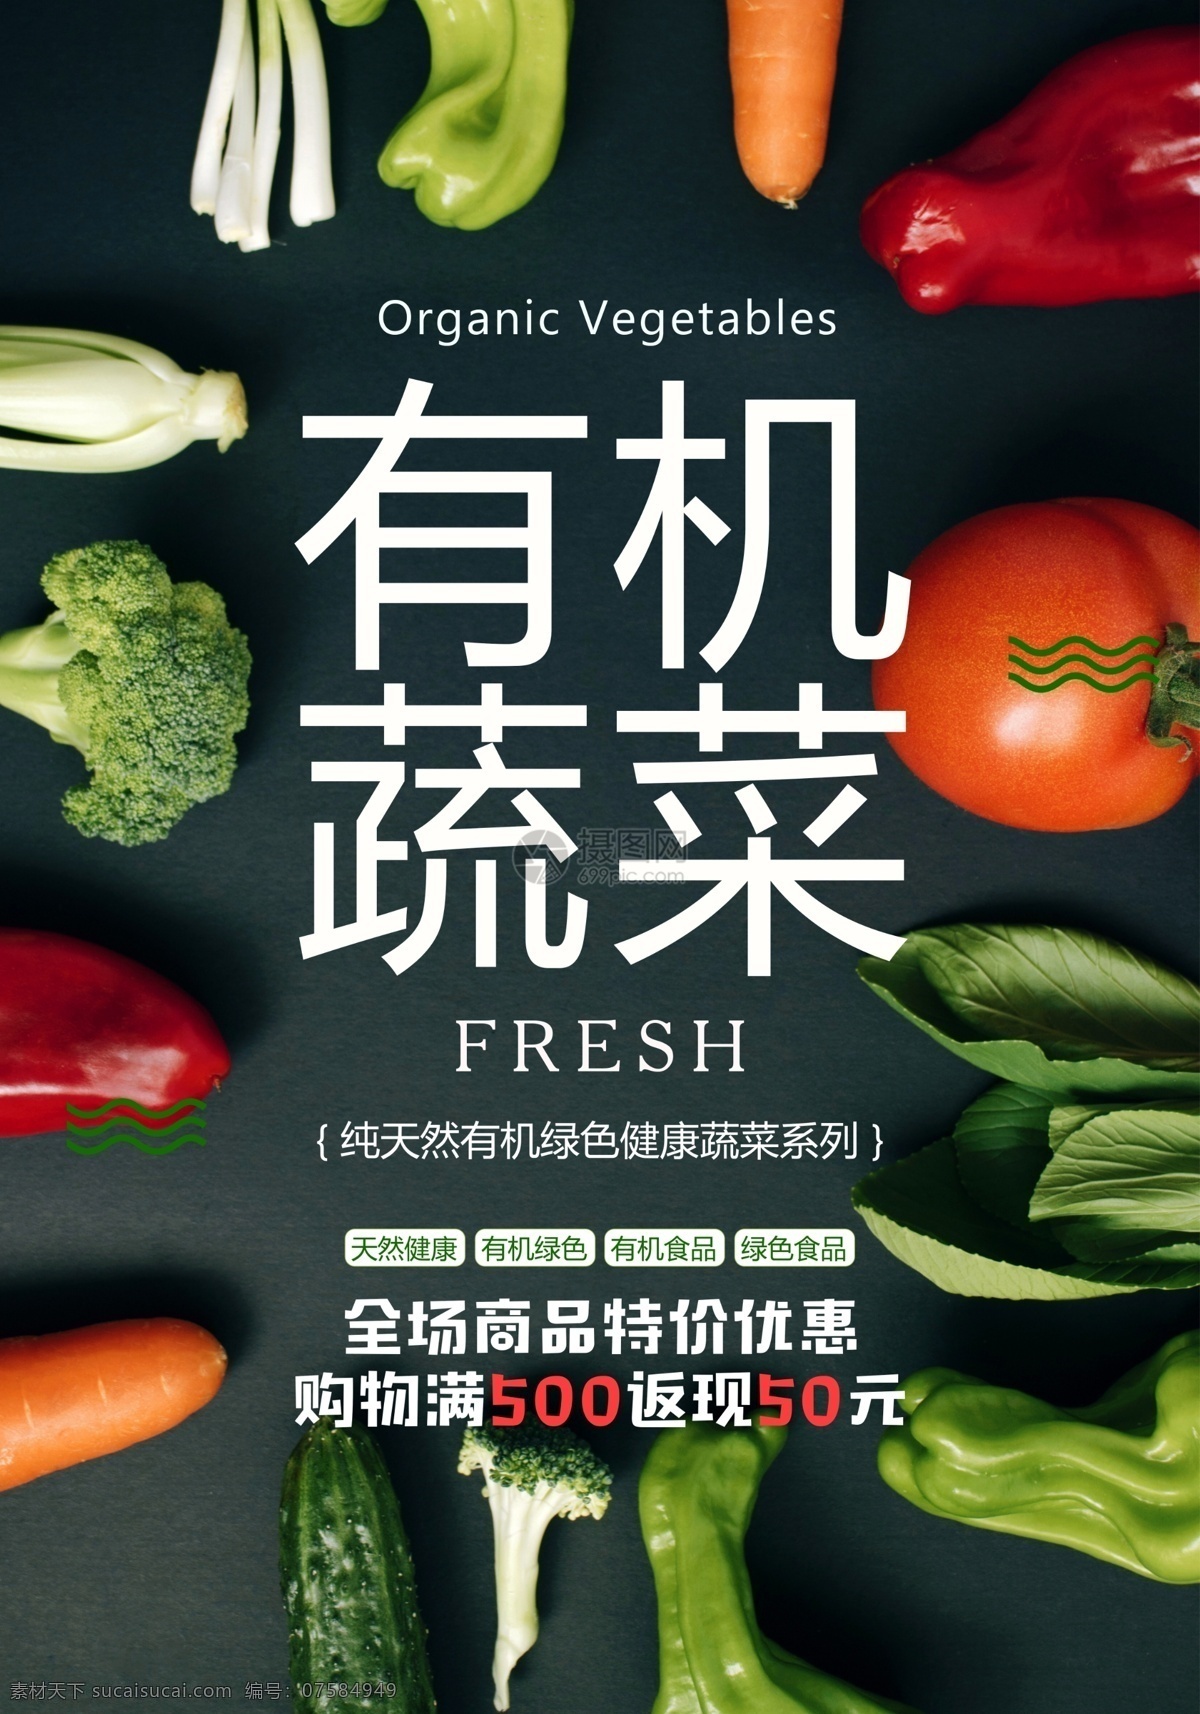 有机 蔬菜 绿色食品 海报 果蔬 时蔬 有机蔬菜 健康 绿色 纯天然 新鲜 时令 宣传海报 绿色食品海报 绿色蔬菜海报 无公害 食物